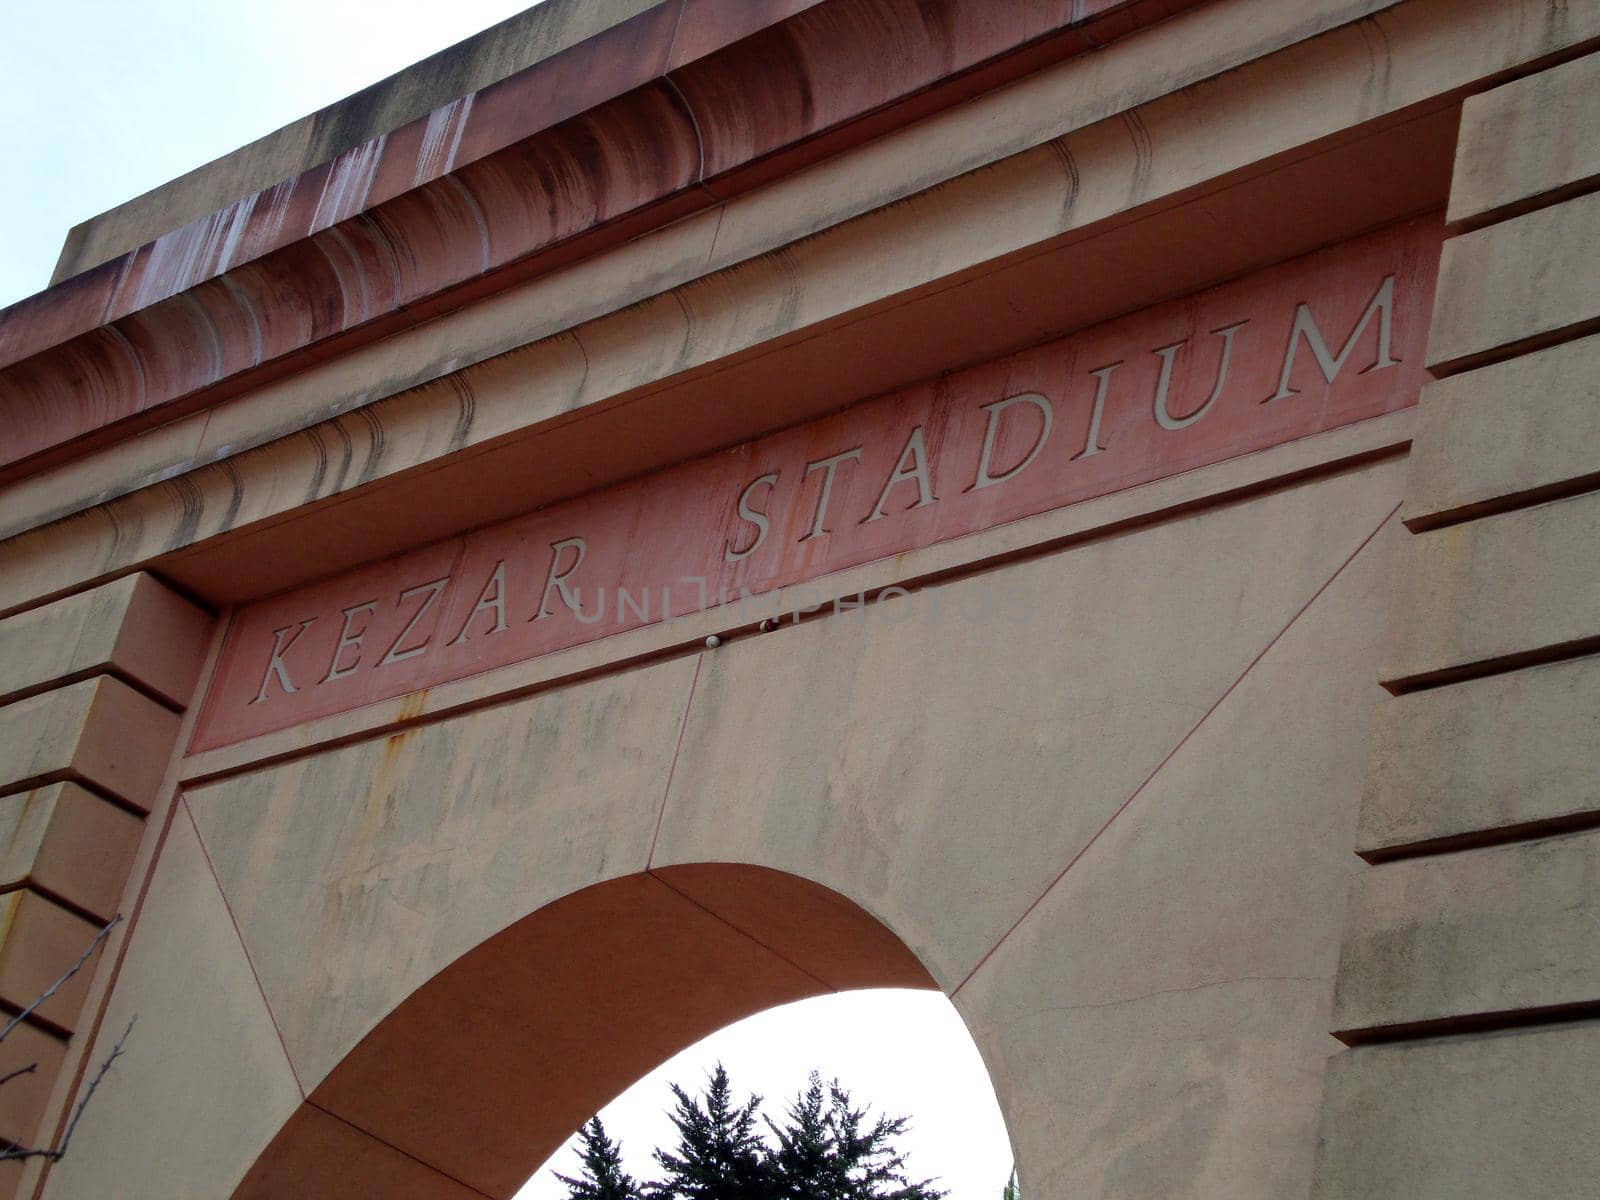 Kezar Stadium Entryway by EricGBVD